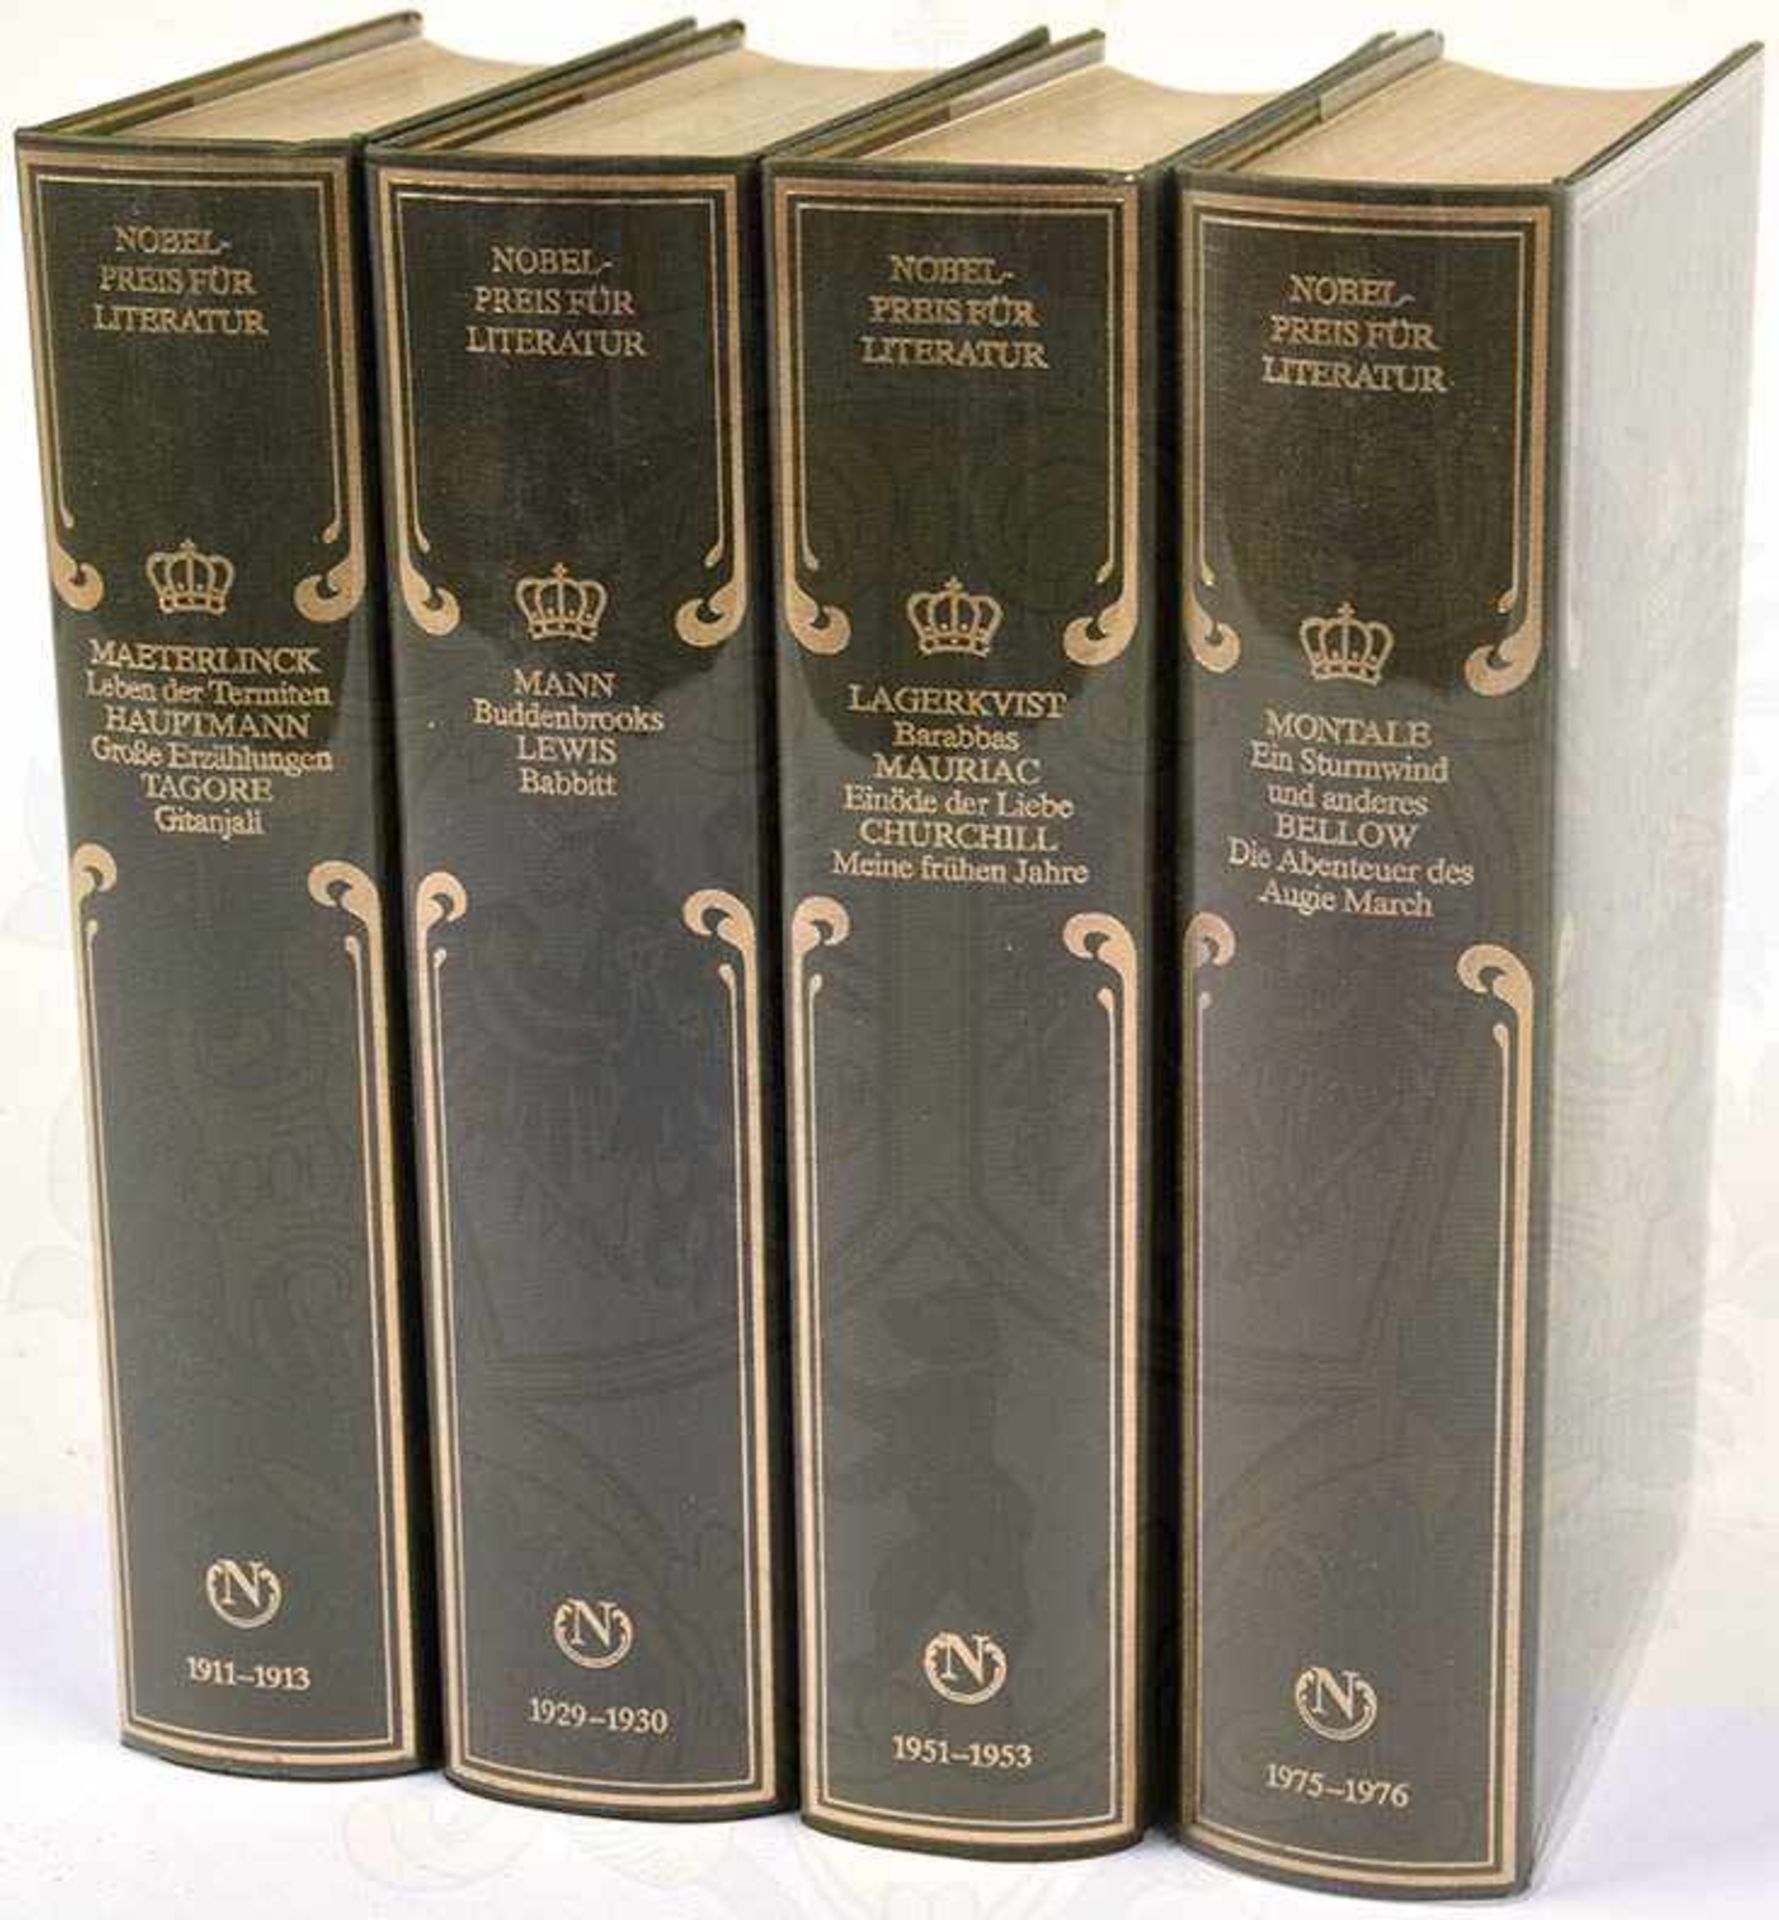 NOBELPREIS FÜR LITERATUR, „1901-1985“, 29 Bände, Coron-Verlag, Lachen am Zürichsee, tausende S., - Bild 2 aus 3